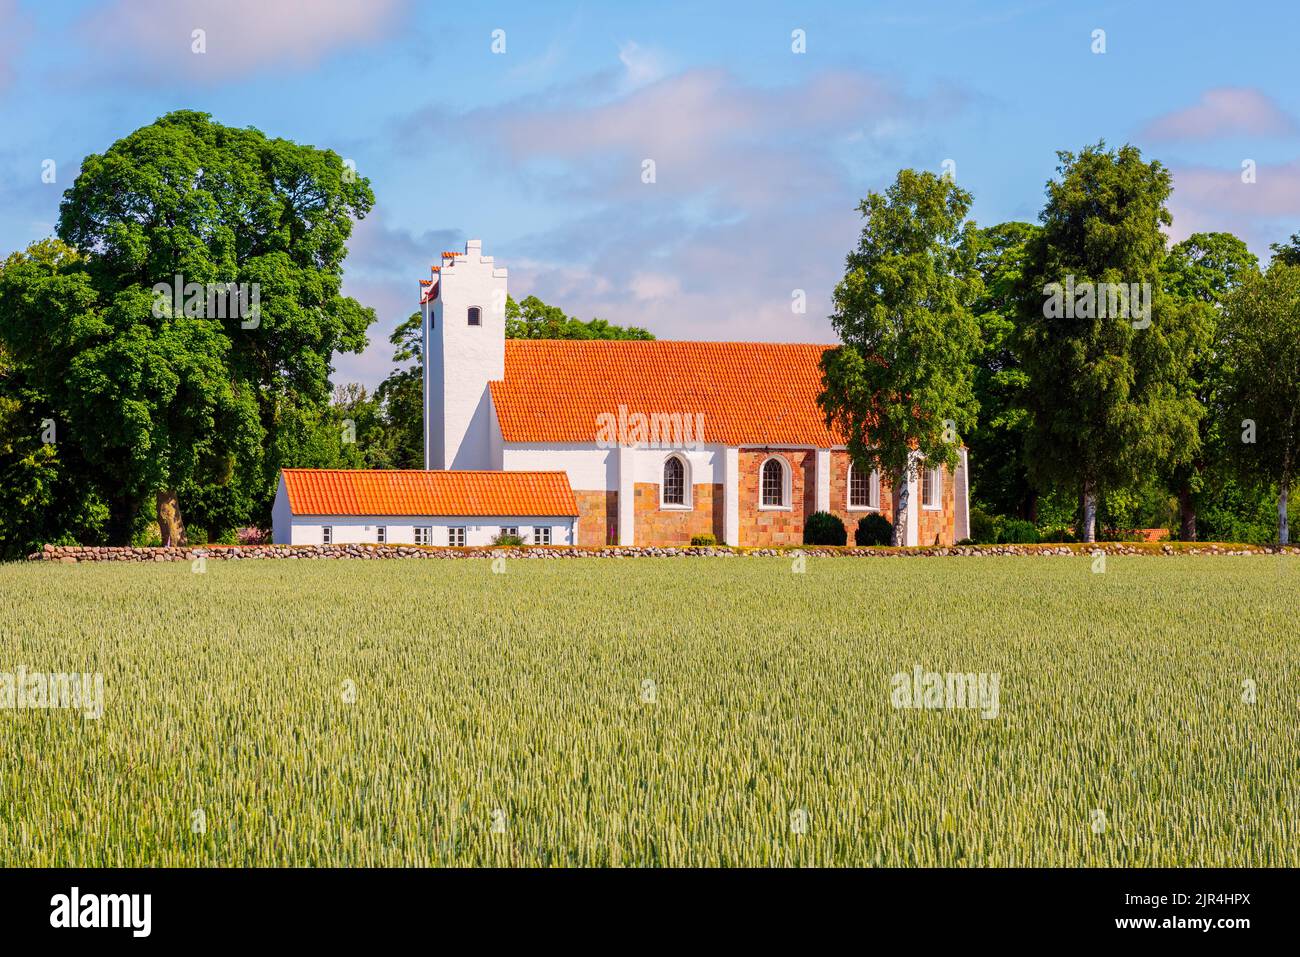 Typische Alte Kirche in Zentral-Dänemark in der Nähe eines Feldes mit Pflanzen, am Sommertag Stockfoto